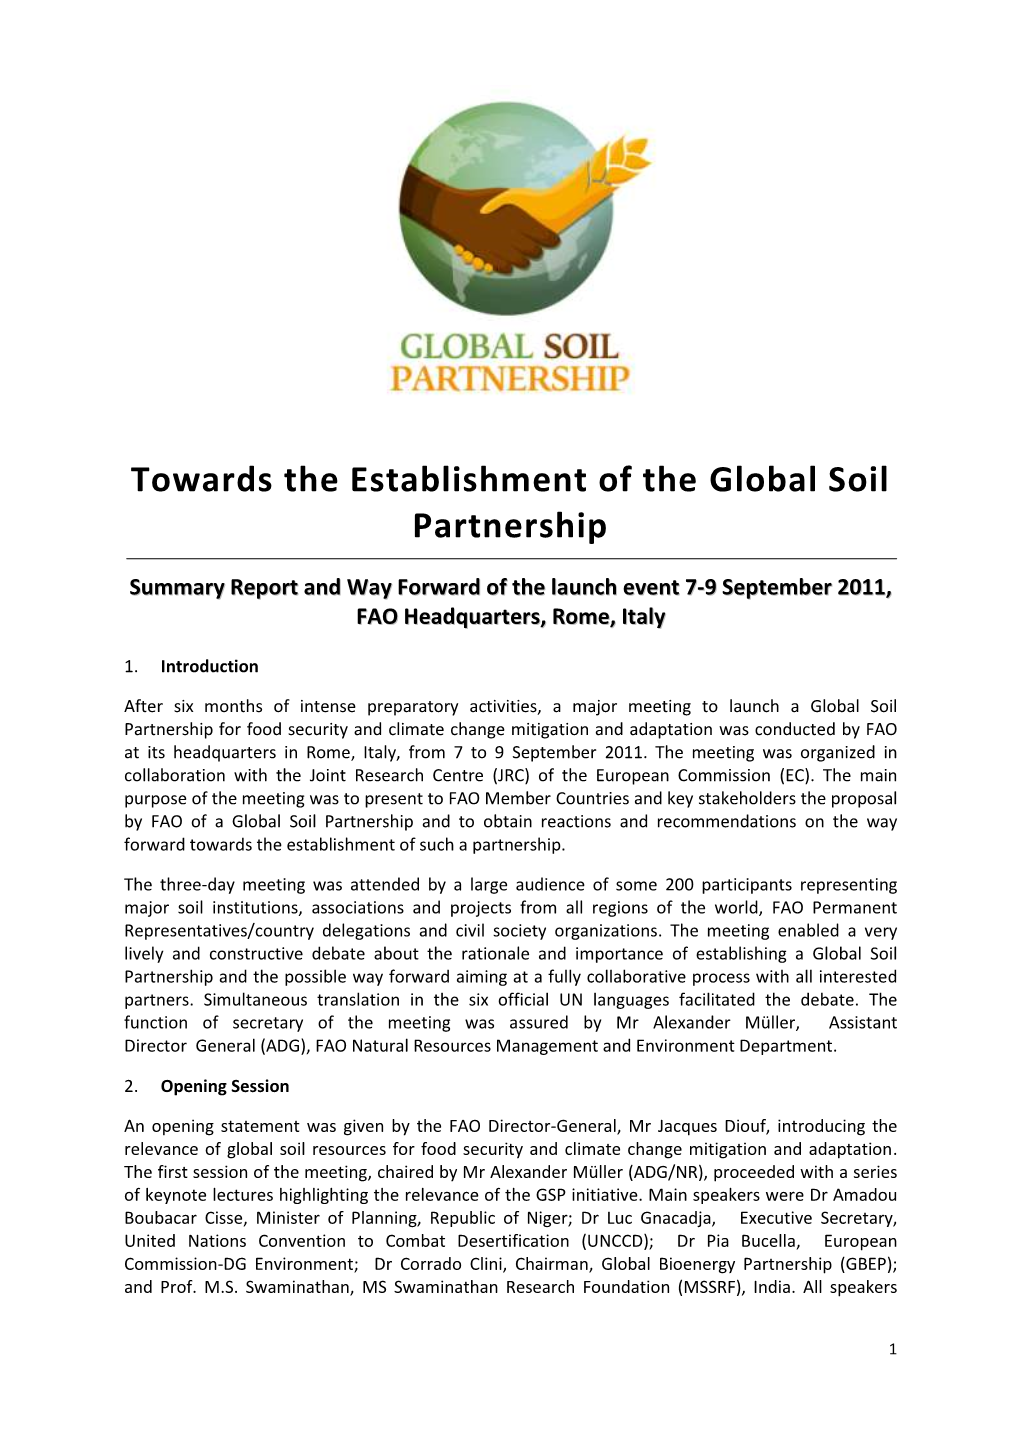 Towards the Establishment of the Global Soil Partnership